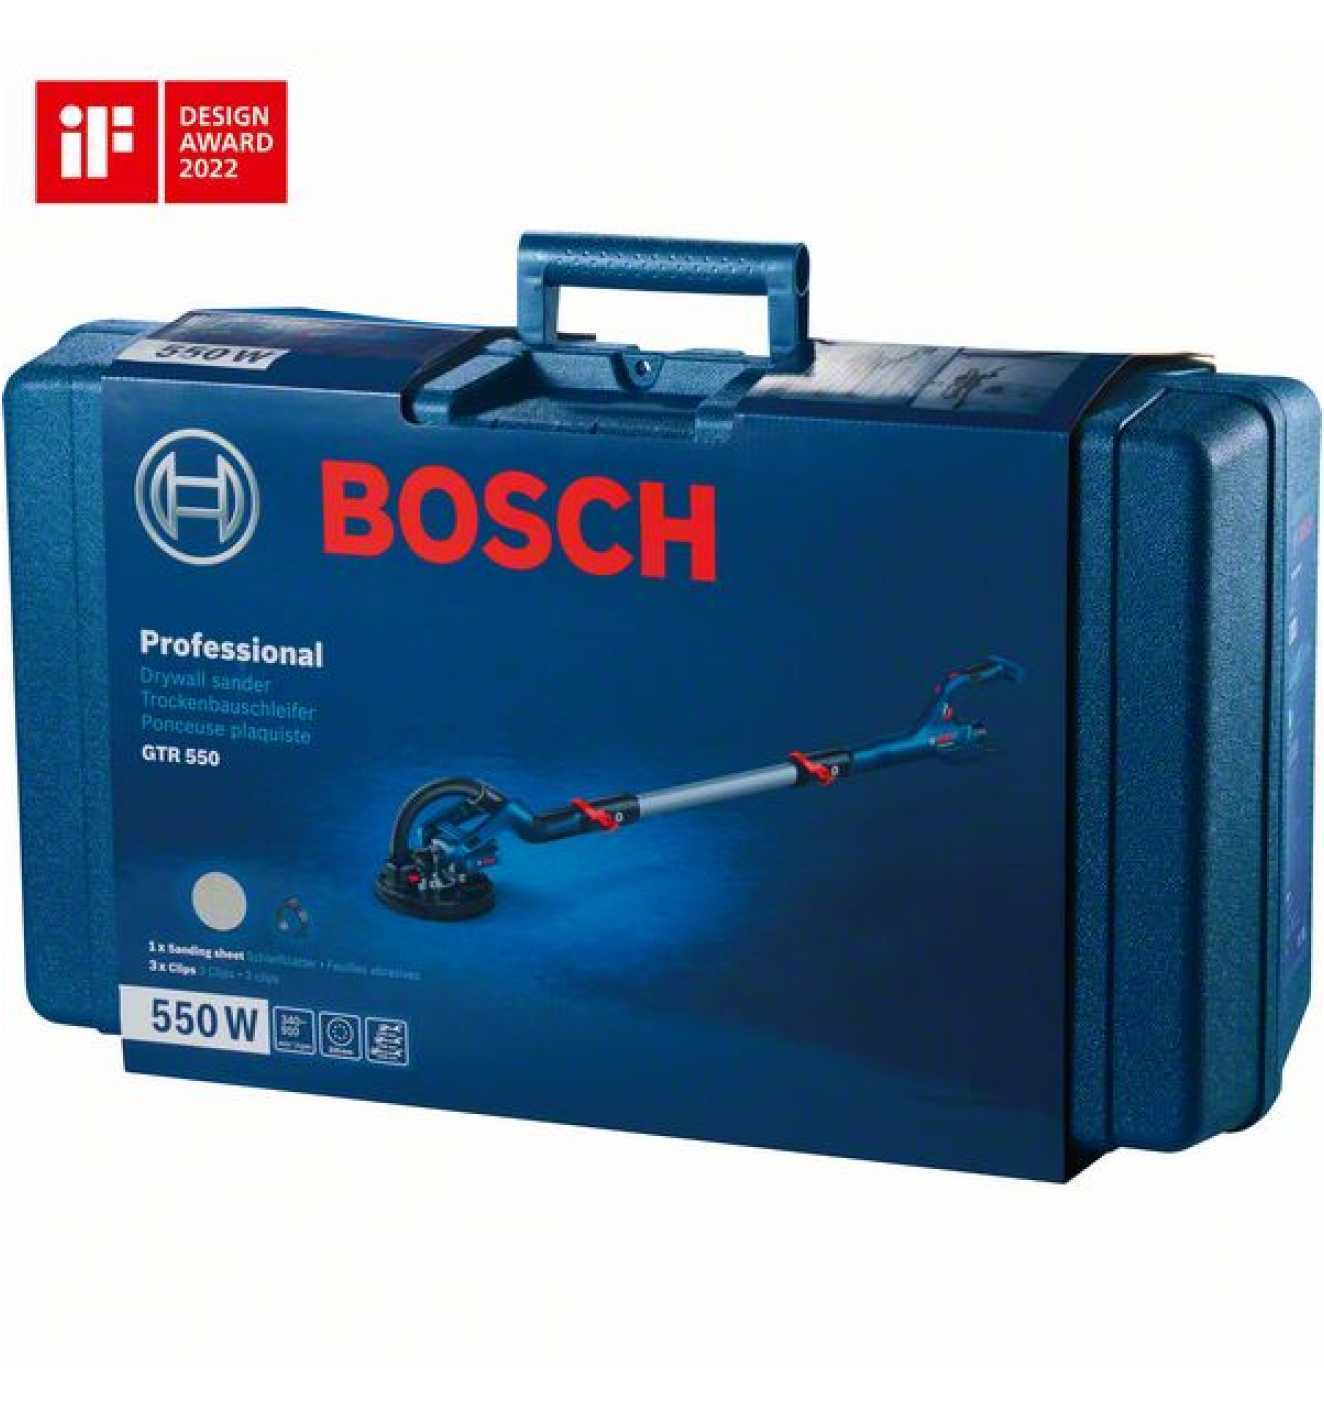 Bosch Trockenbauschleifer GTR 55-225, mit Zubehör, Handwerkerkoffer